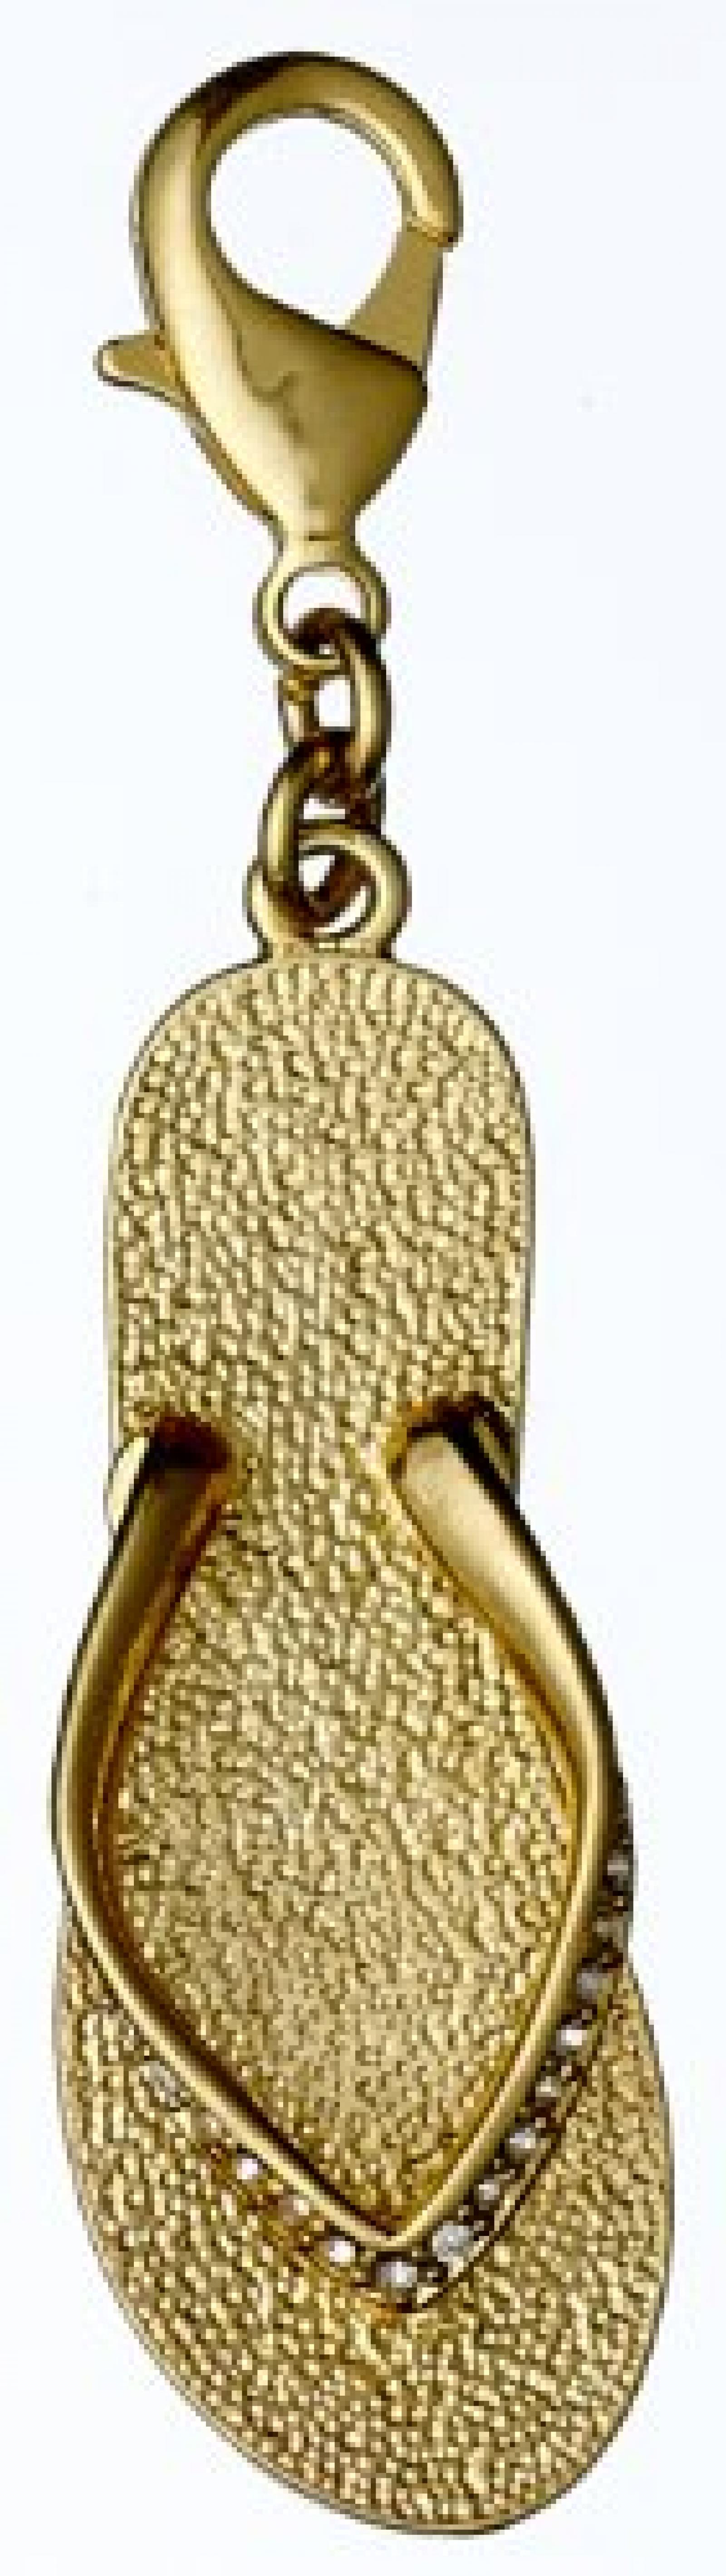 Pilgrim Jewelry Damen-Anhänger Messing aus der Serie Mega vergoldet,weiß 6 cm 411322002 